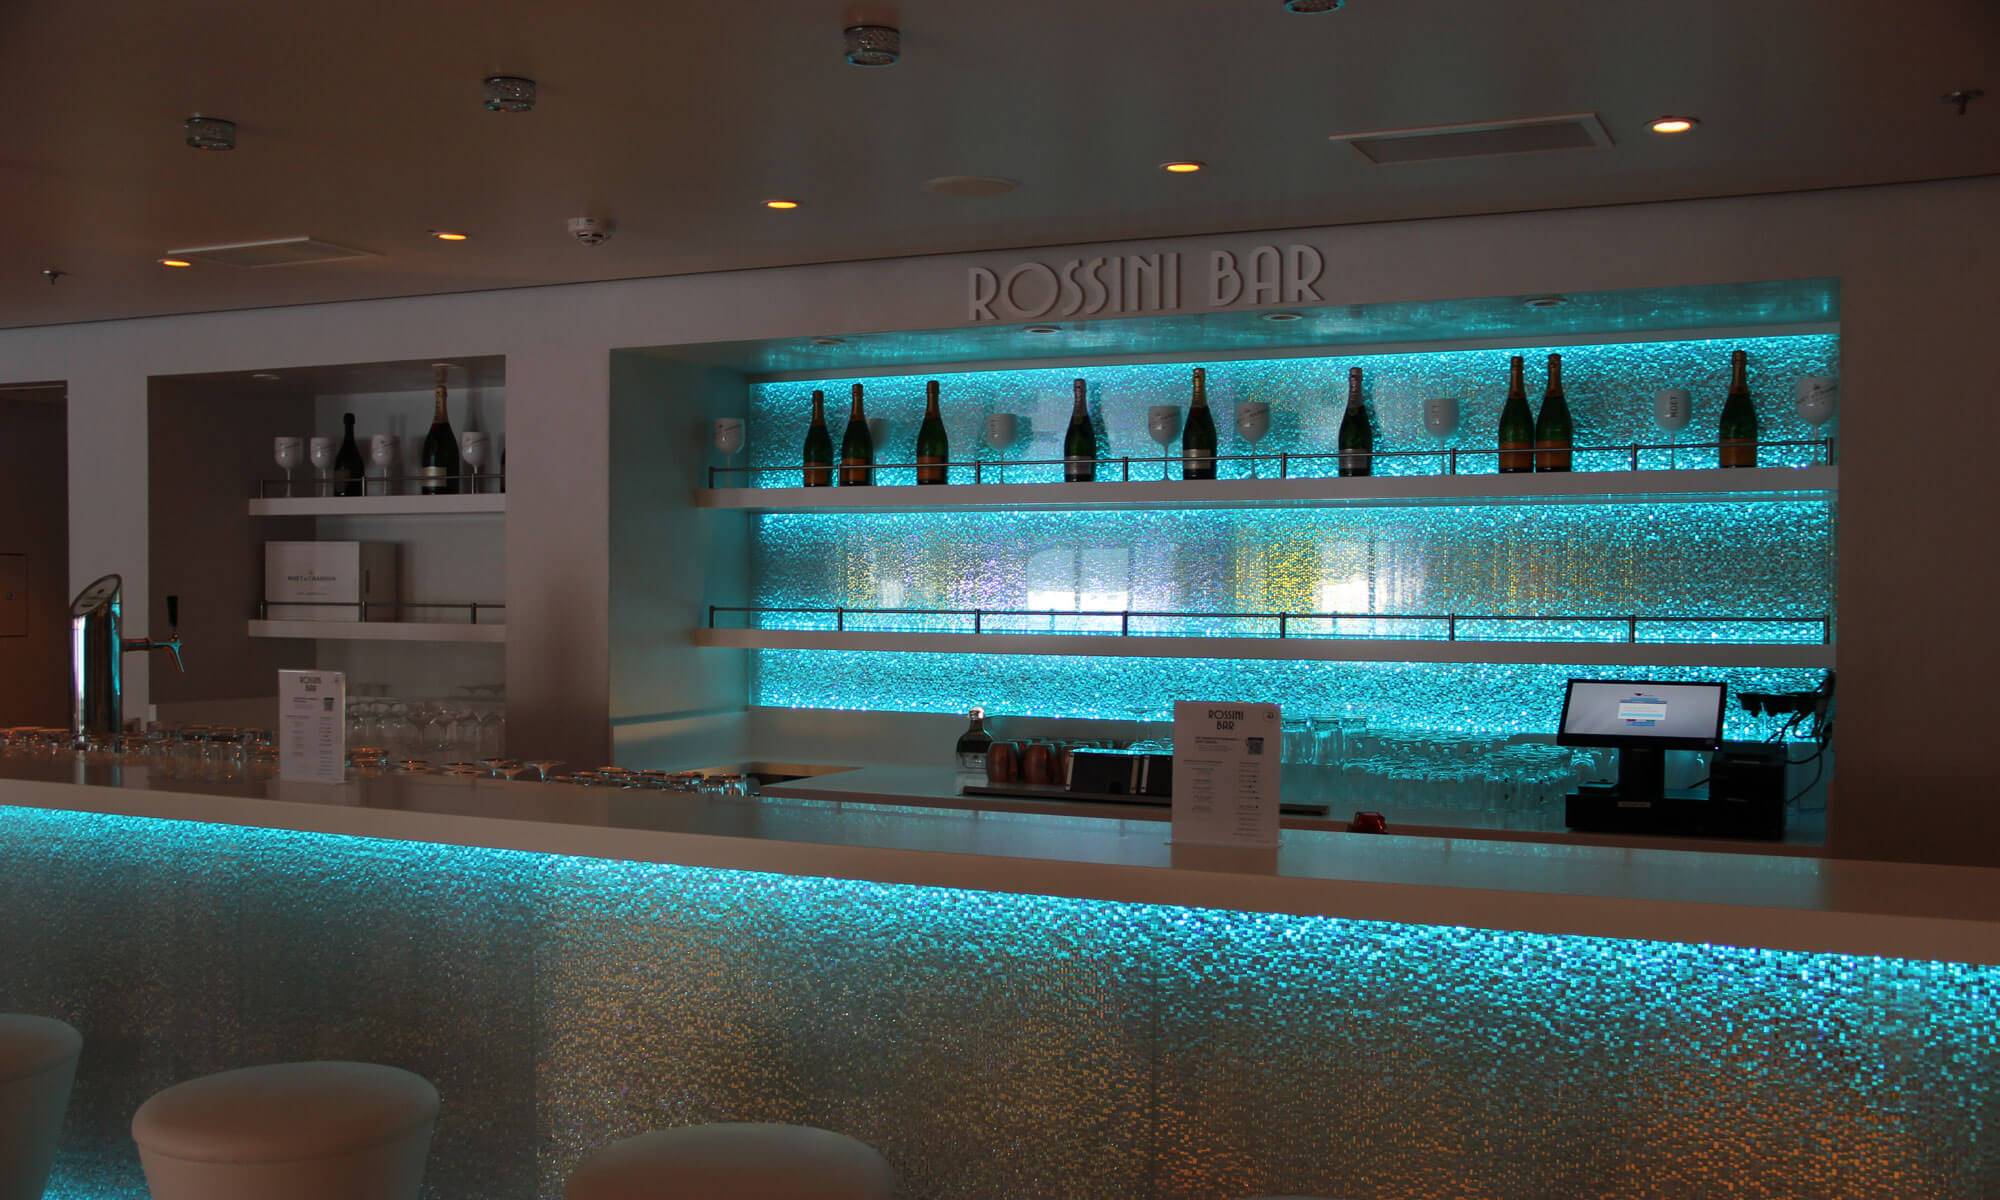 Rossini Bar